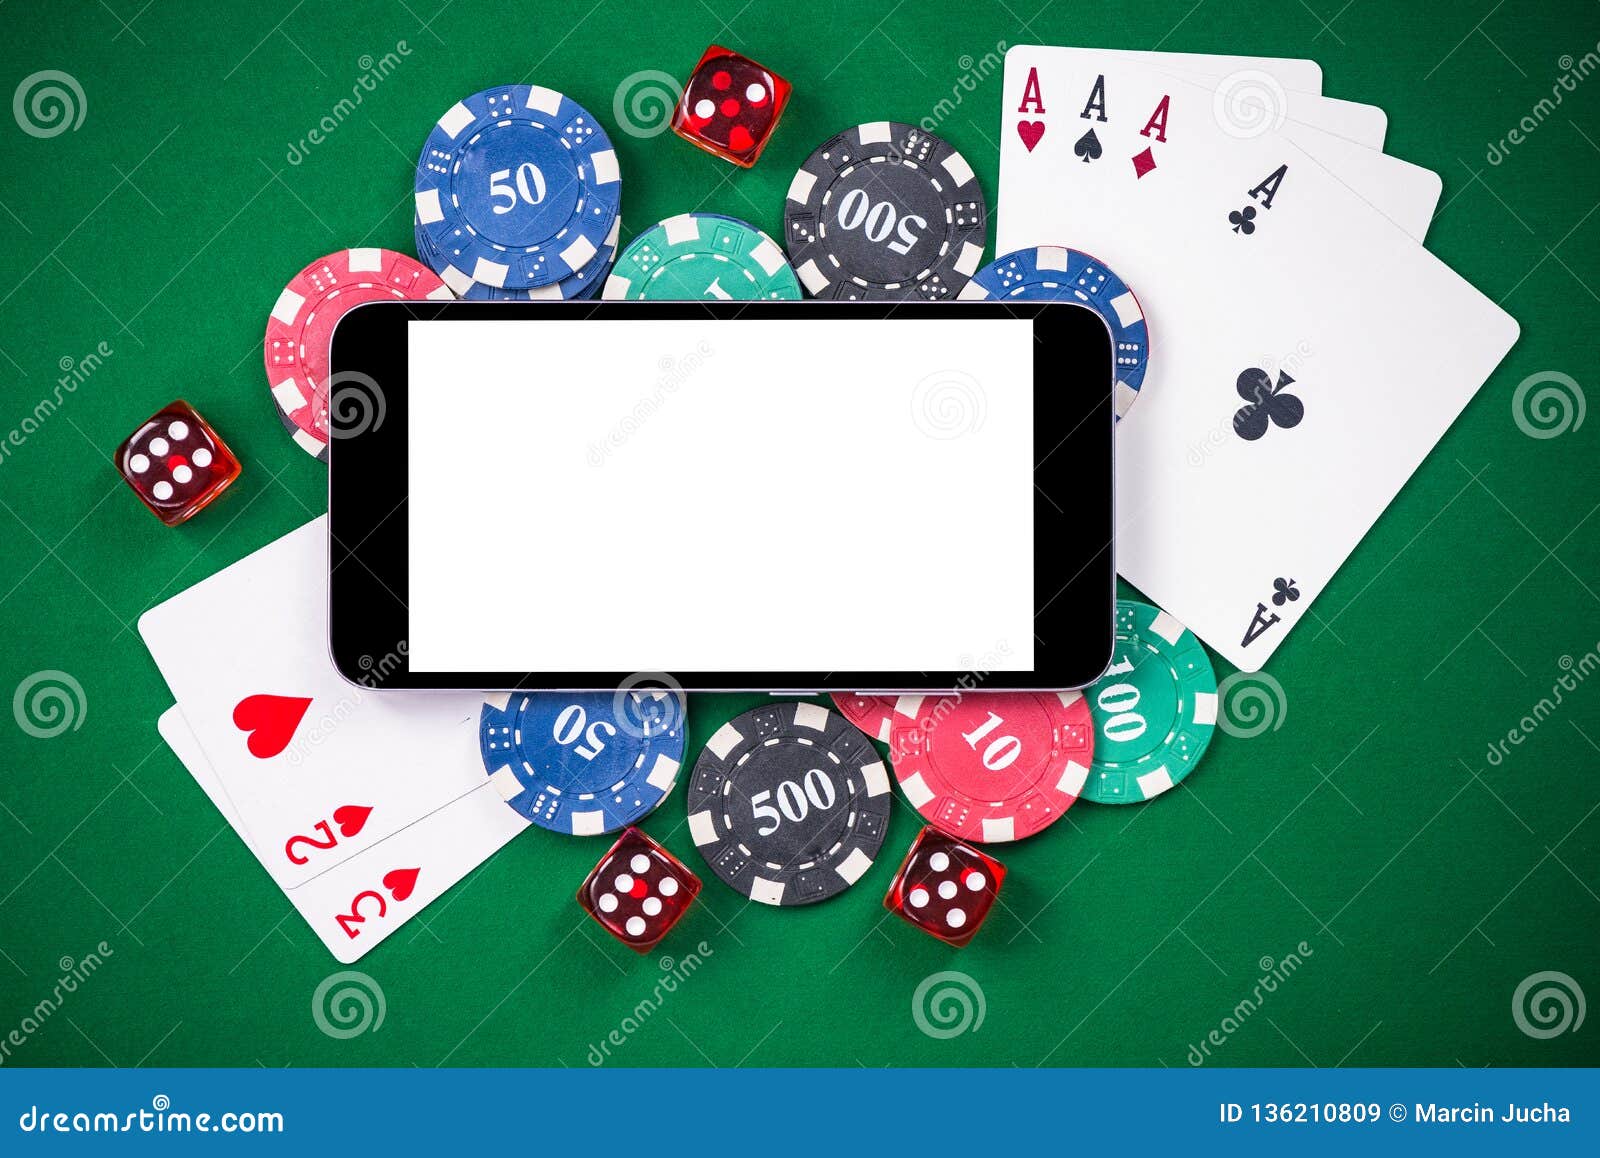 Poker download pc stacks